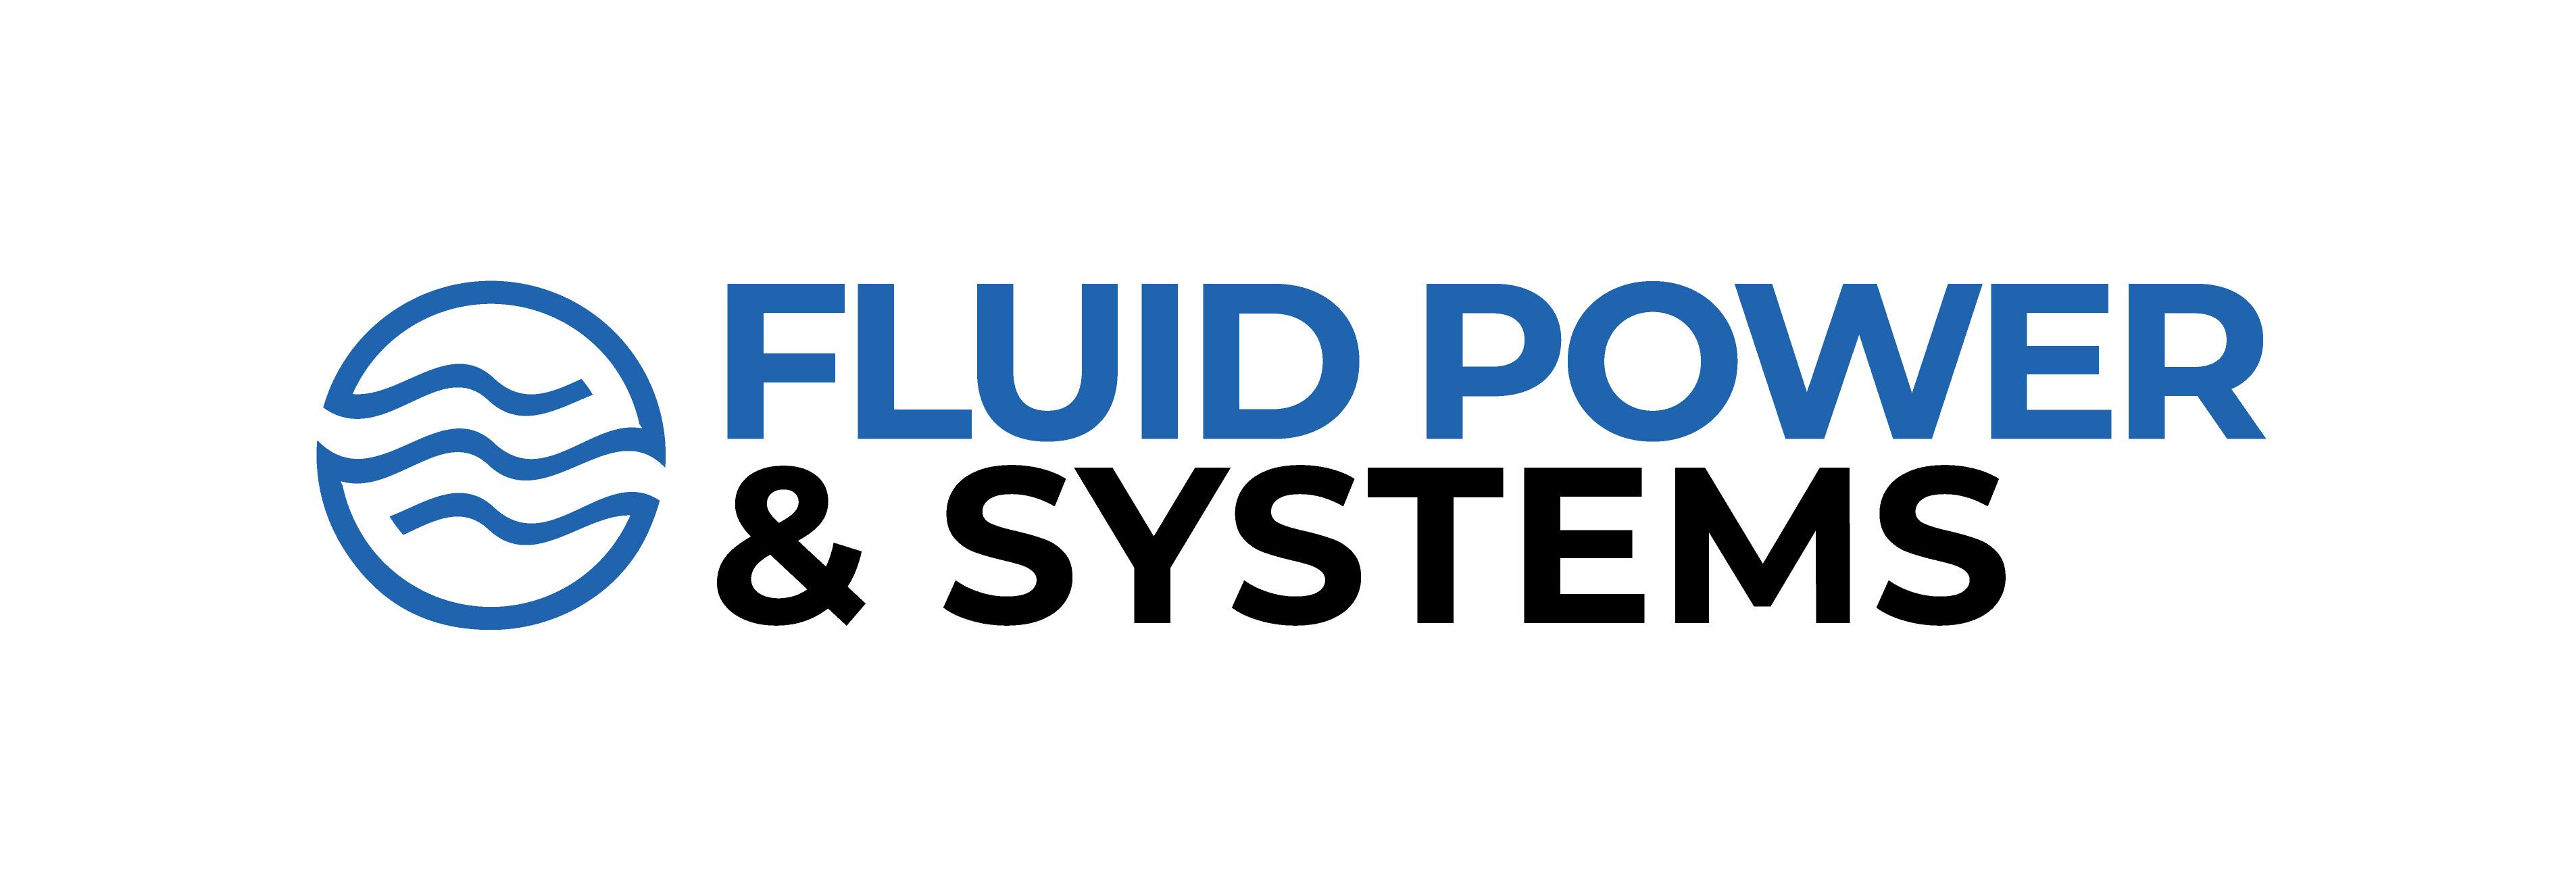 Fluid Power & Systems